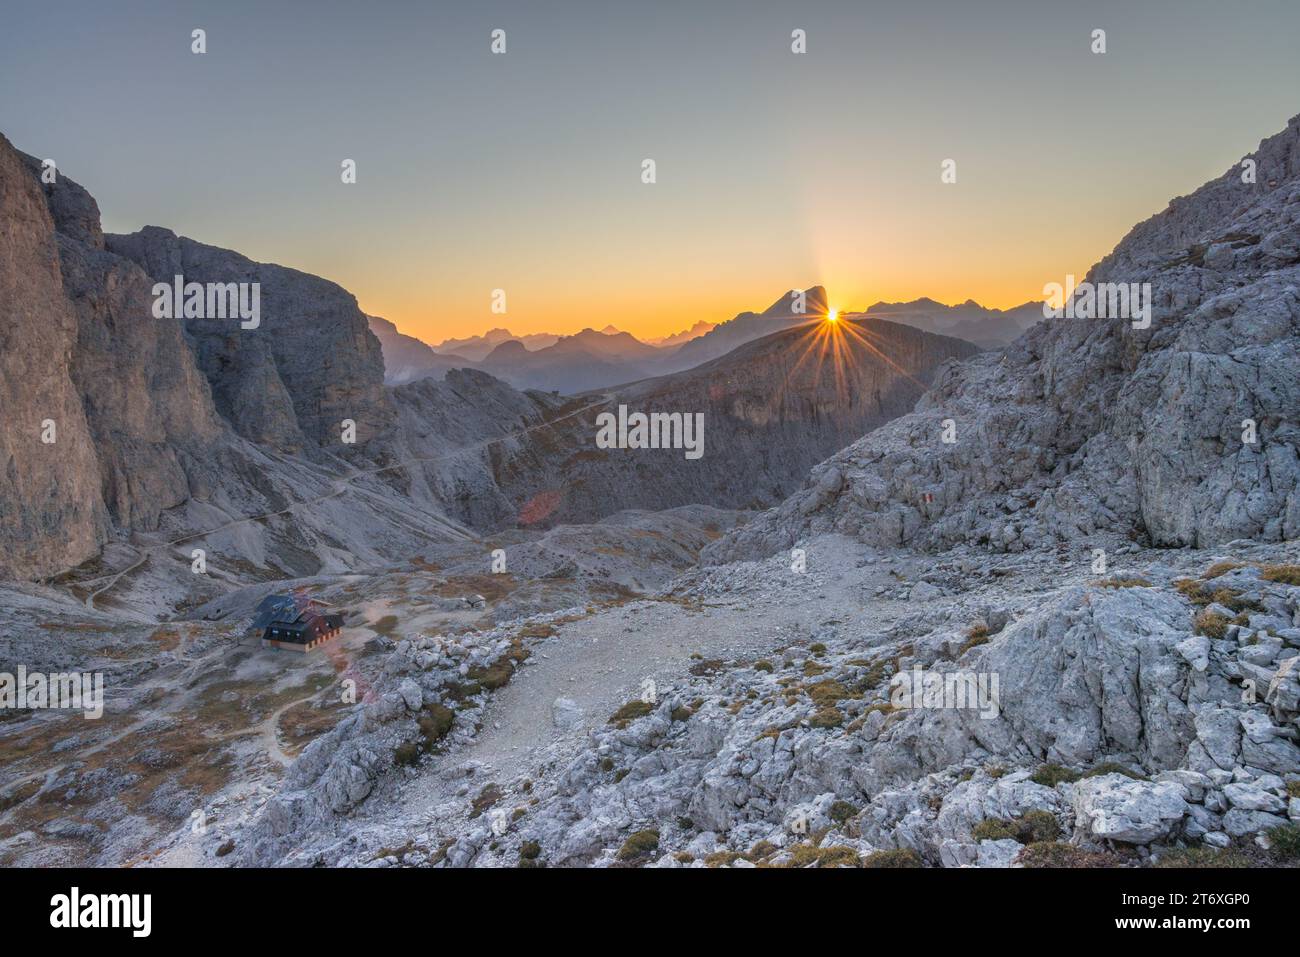 Il sole sorge dietro la montagna della Marmolada, i raggi del sole illuminano la valle alpina con la capanna Antermoia CAI. Alba in montagna. Foto Stock